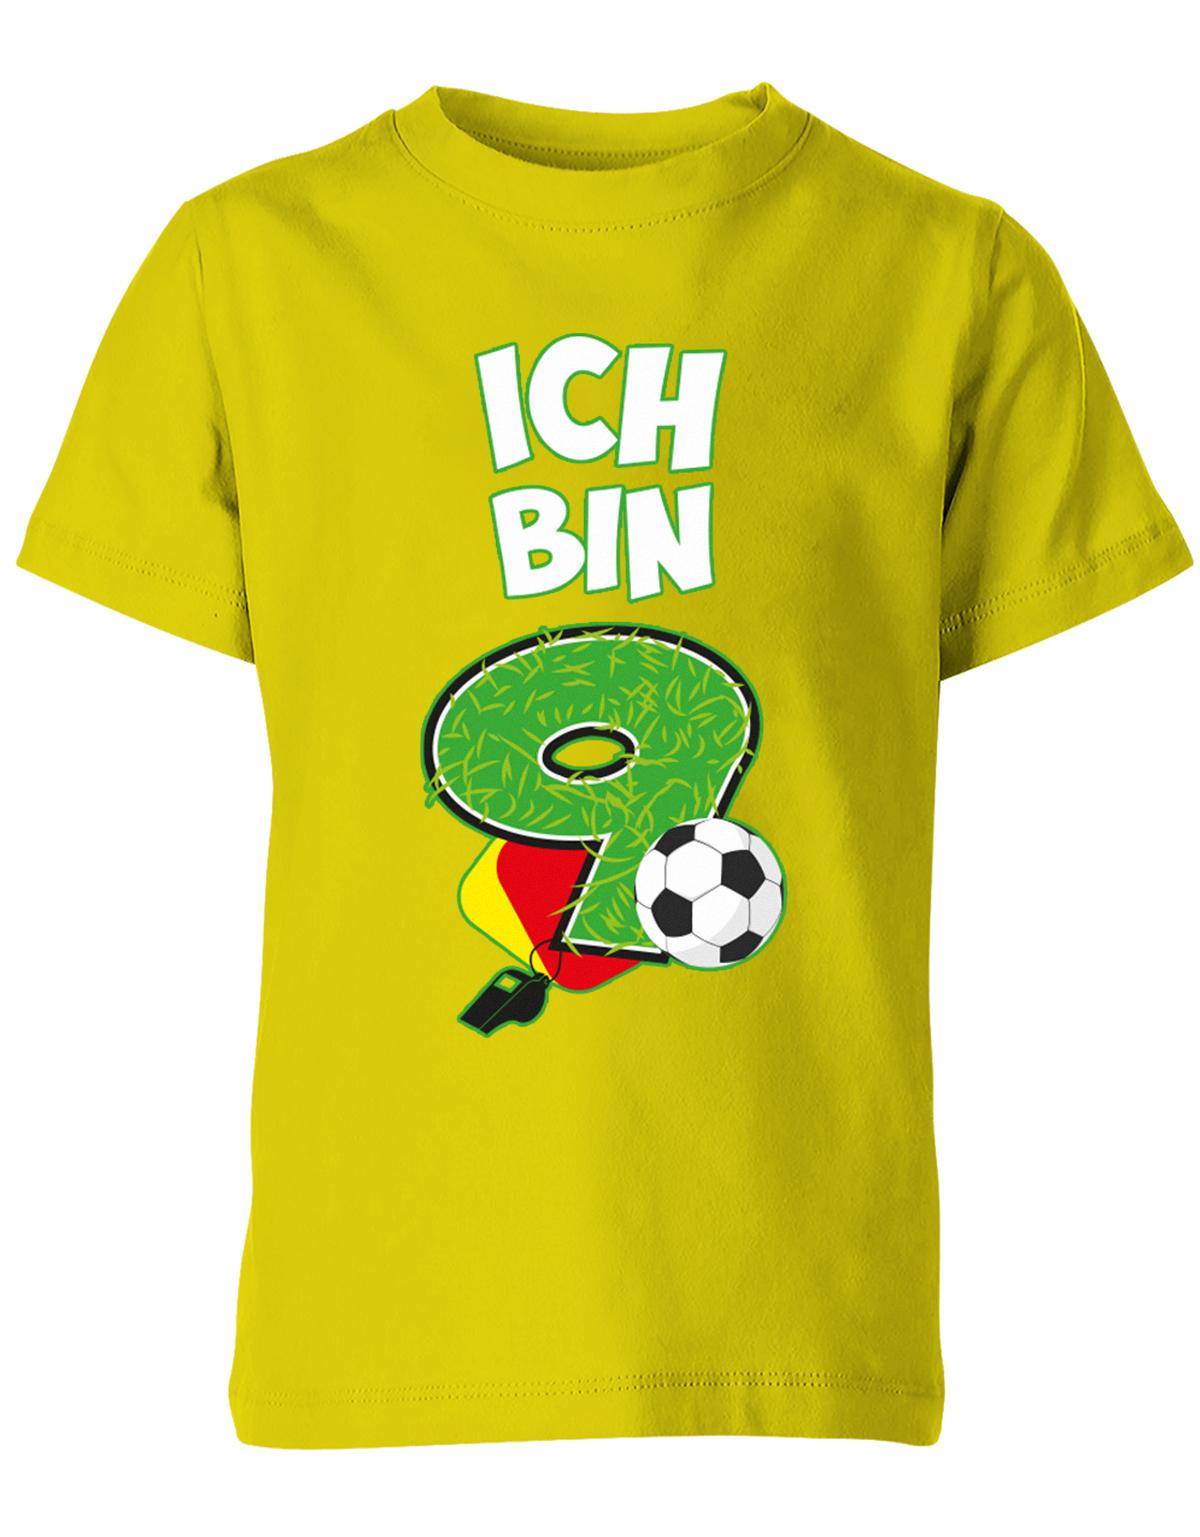 ich-bin-9-fussball-rote-gelbe-karte-geburtstag-fussballer-shirt-kinder-shirt-gelb